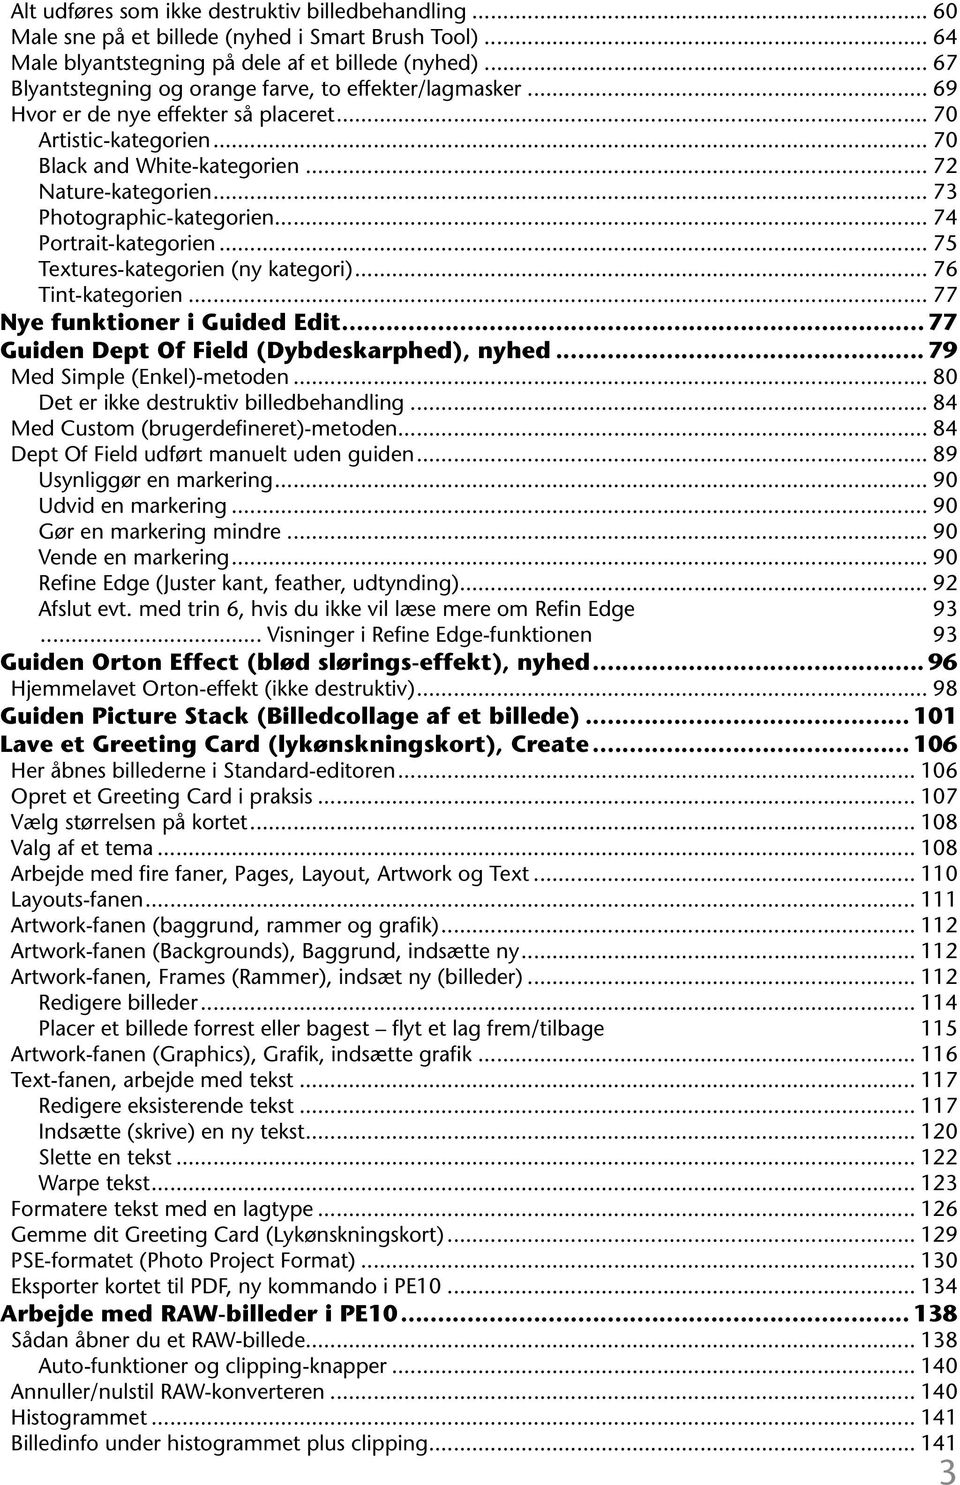 .. 75 Textures-kategorien (ny kategori) 76 Tint-kategorien... 77 Nye funktioner i Guided Edit... 77 Guiden Dept Of Field (Dybdeskarphed), nyhed.